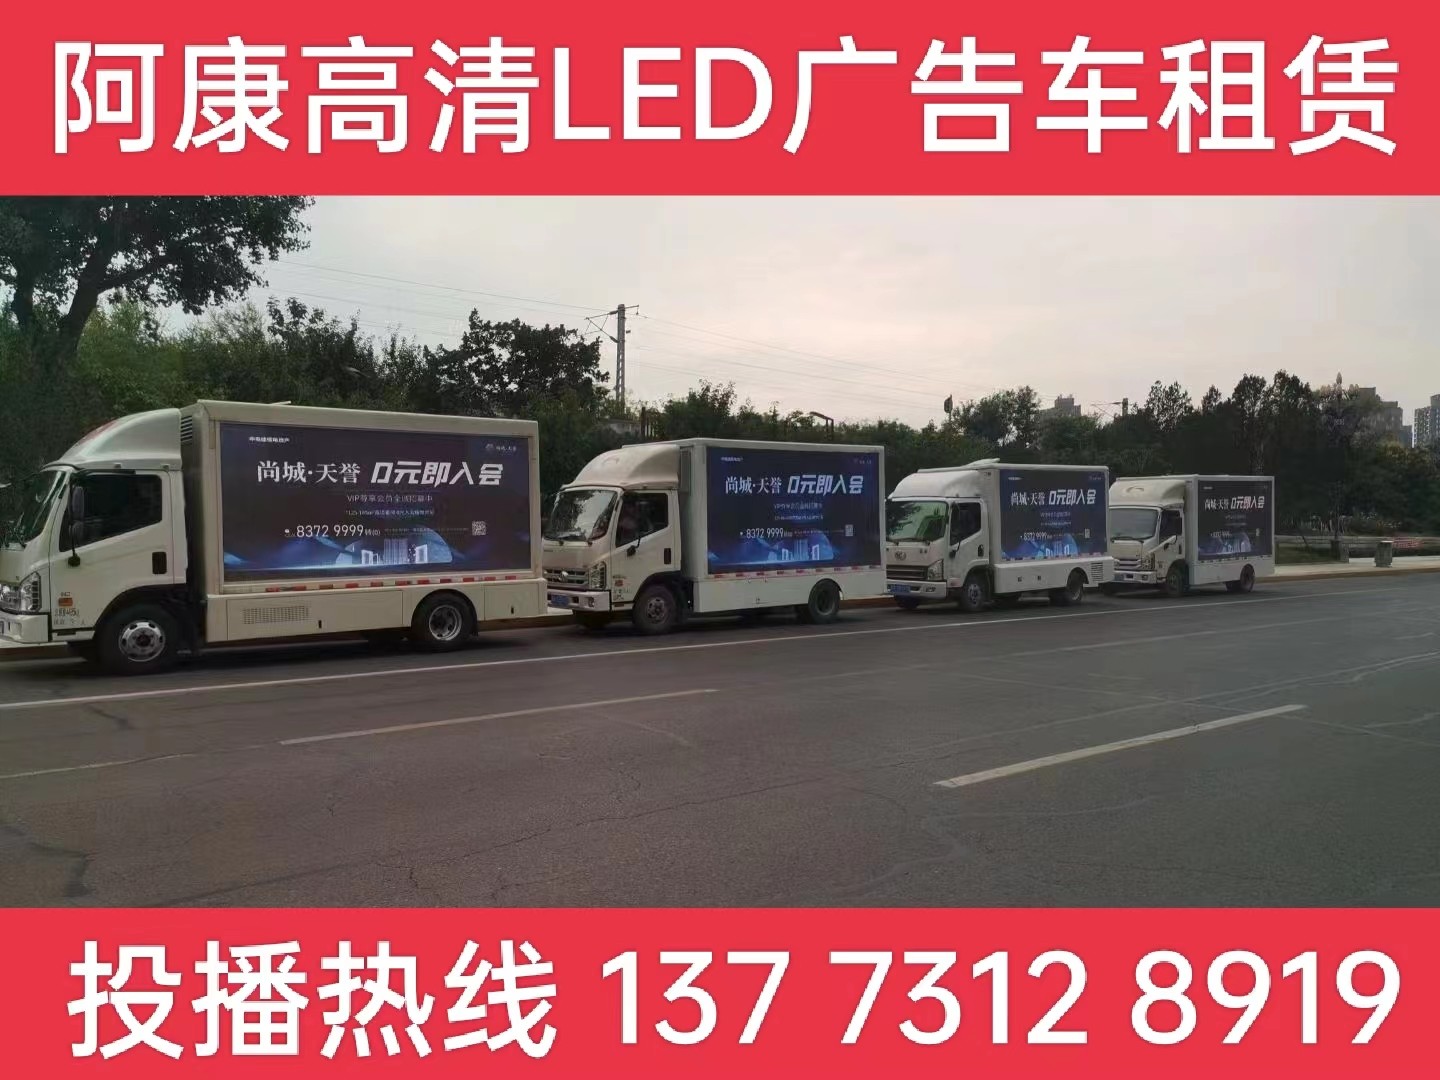 张家港LED广告车出租公司